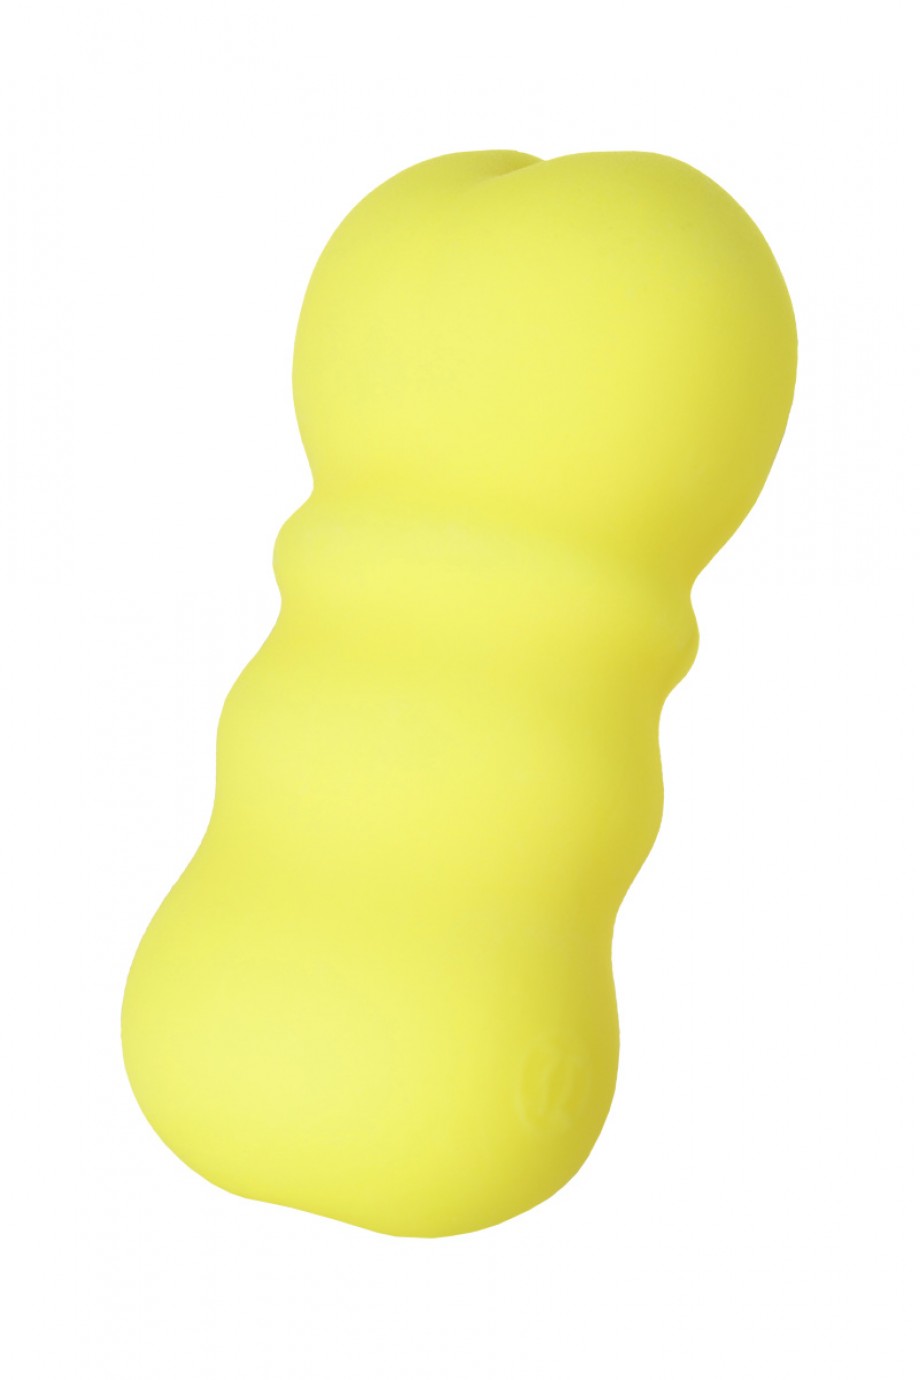 MensMax FEEL 2, желтый